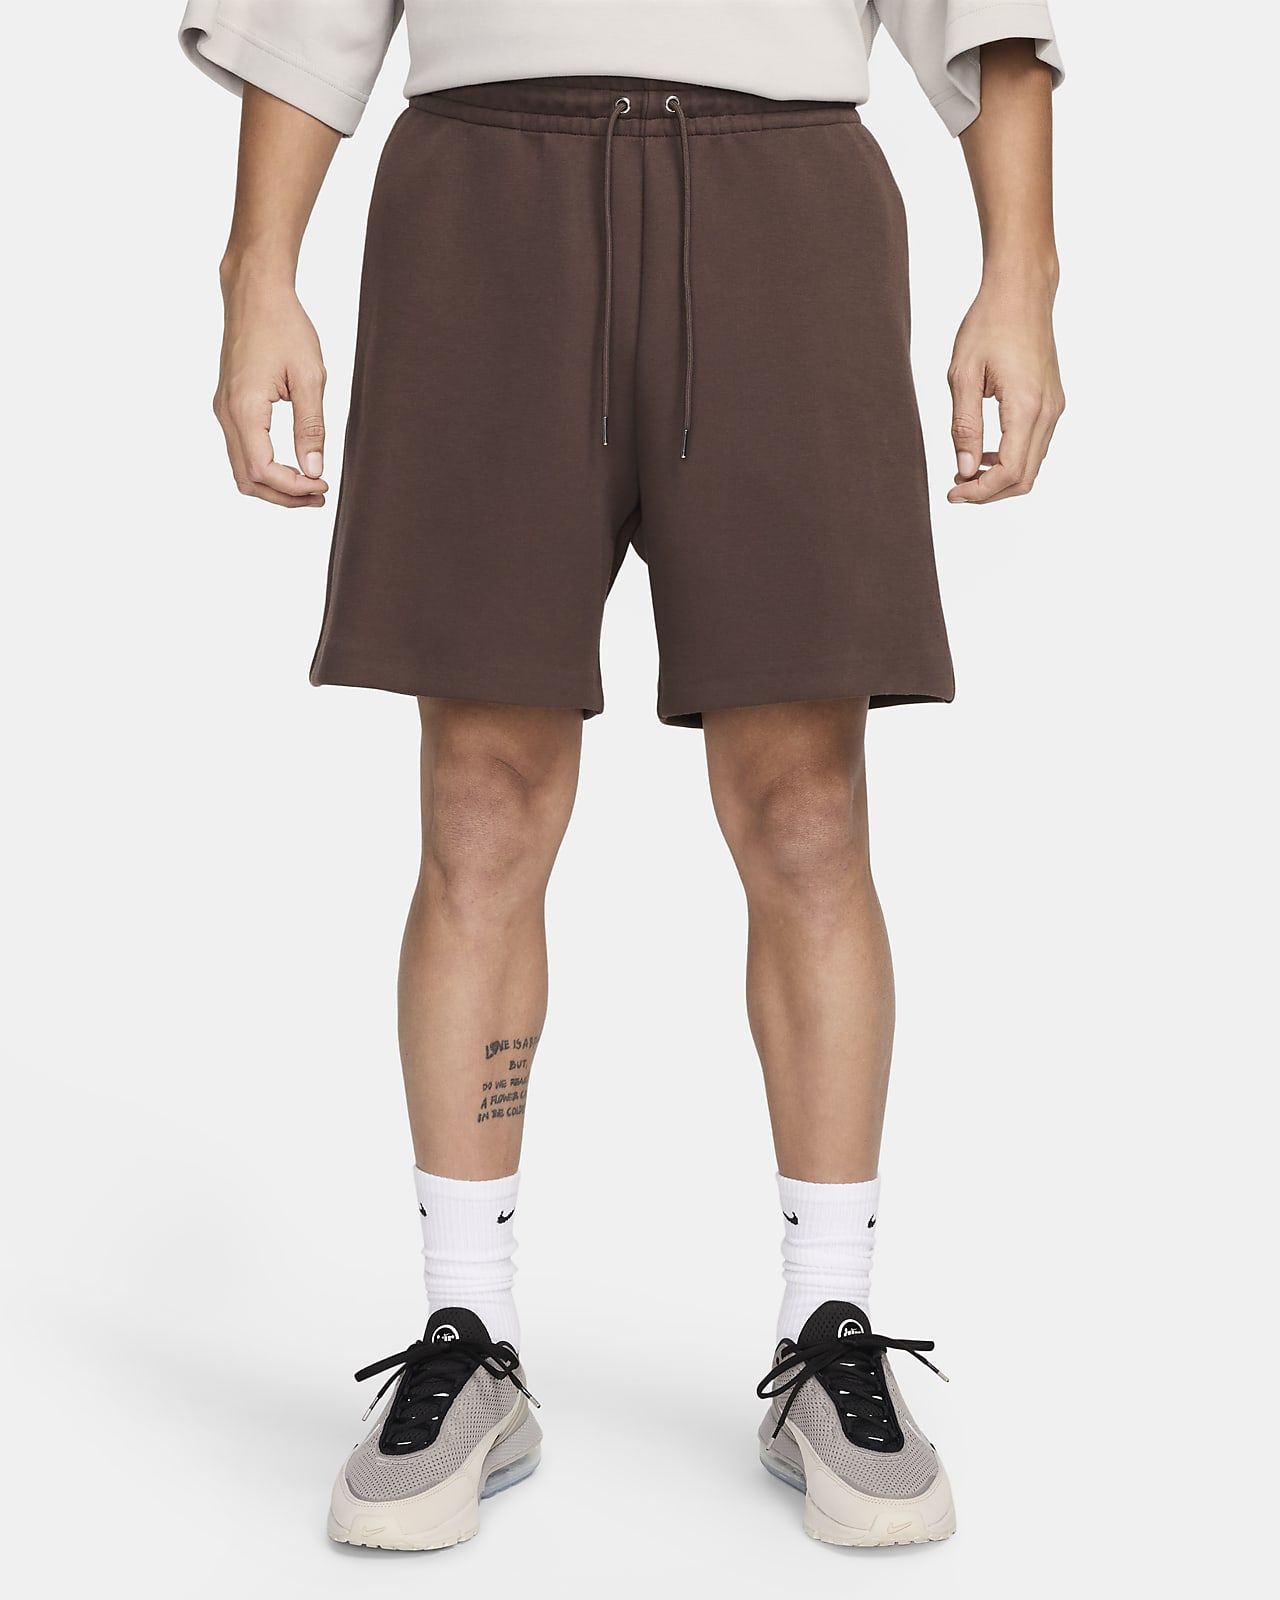 Shorts in fleece Nike Sportswear Tech Fleece Reimagined – Uomo